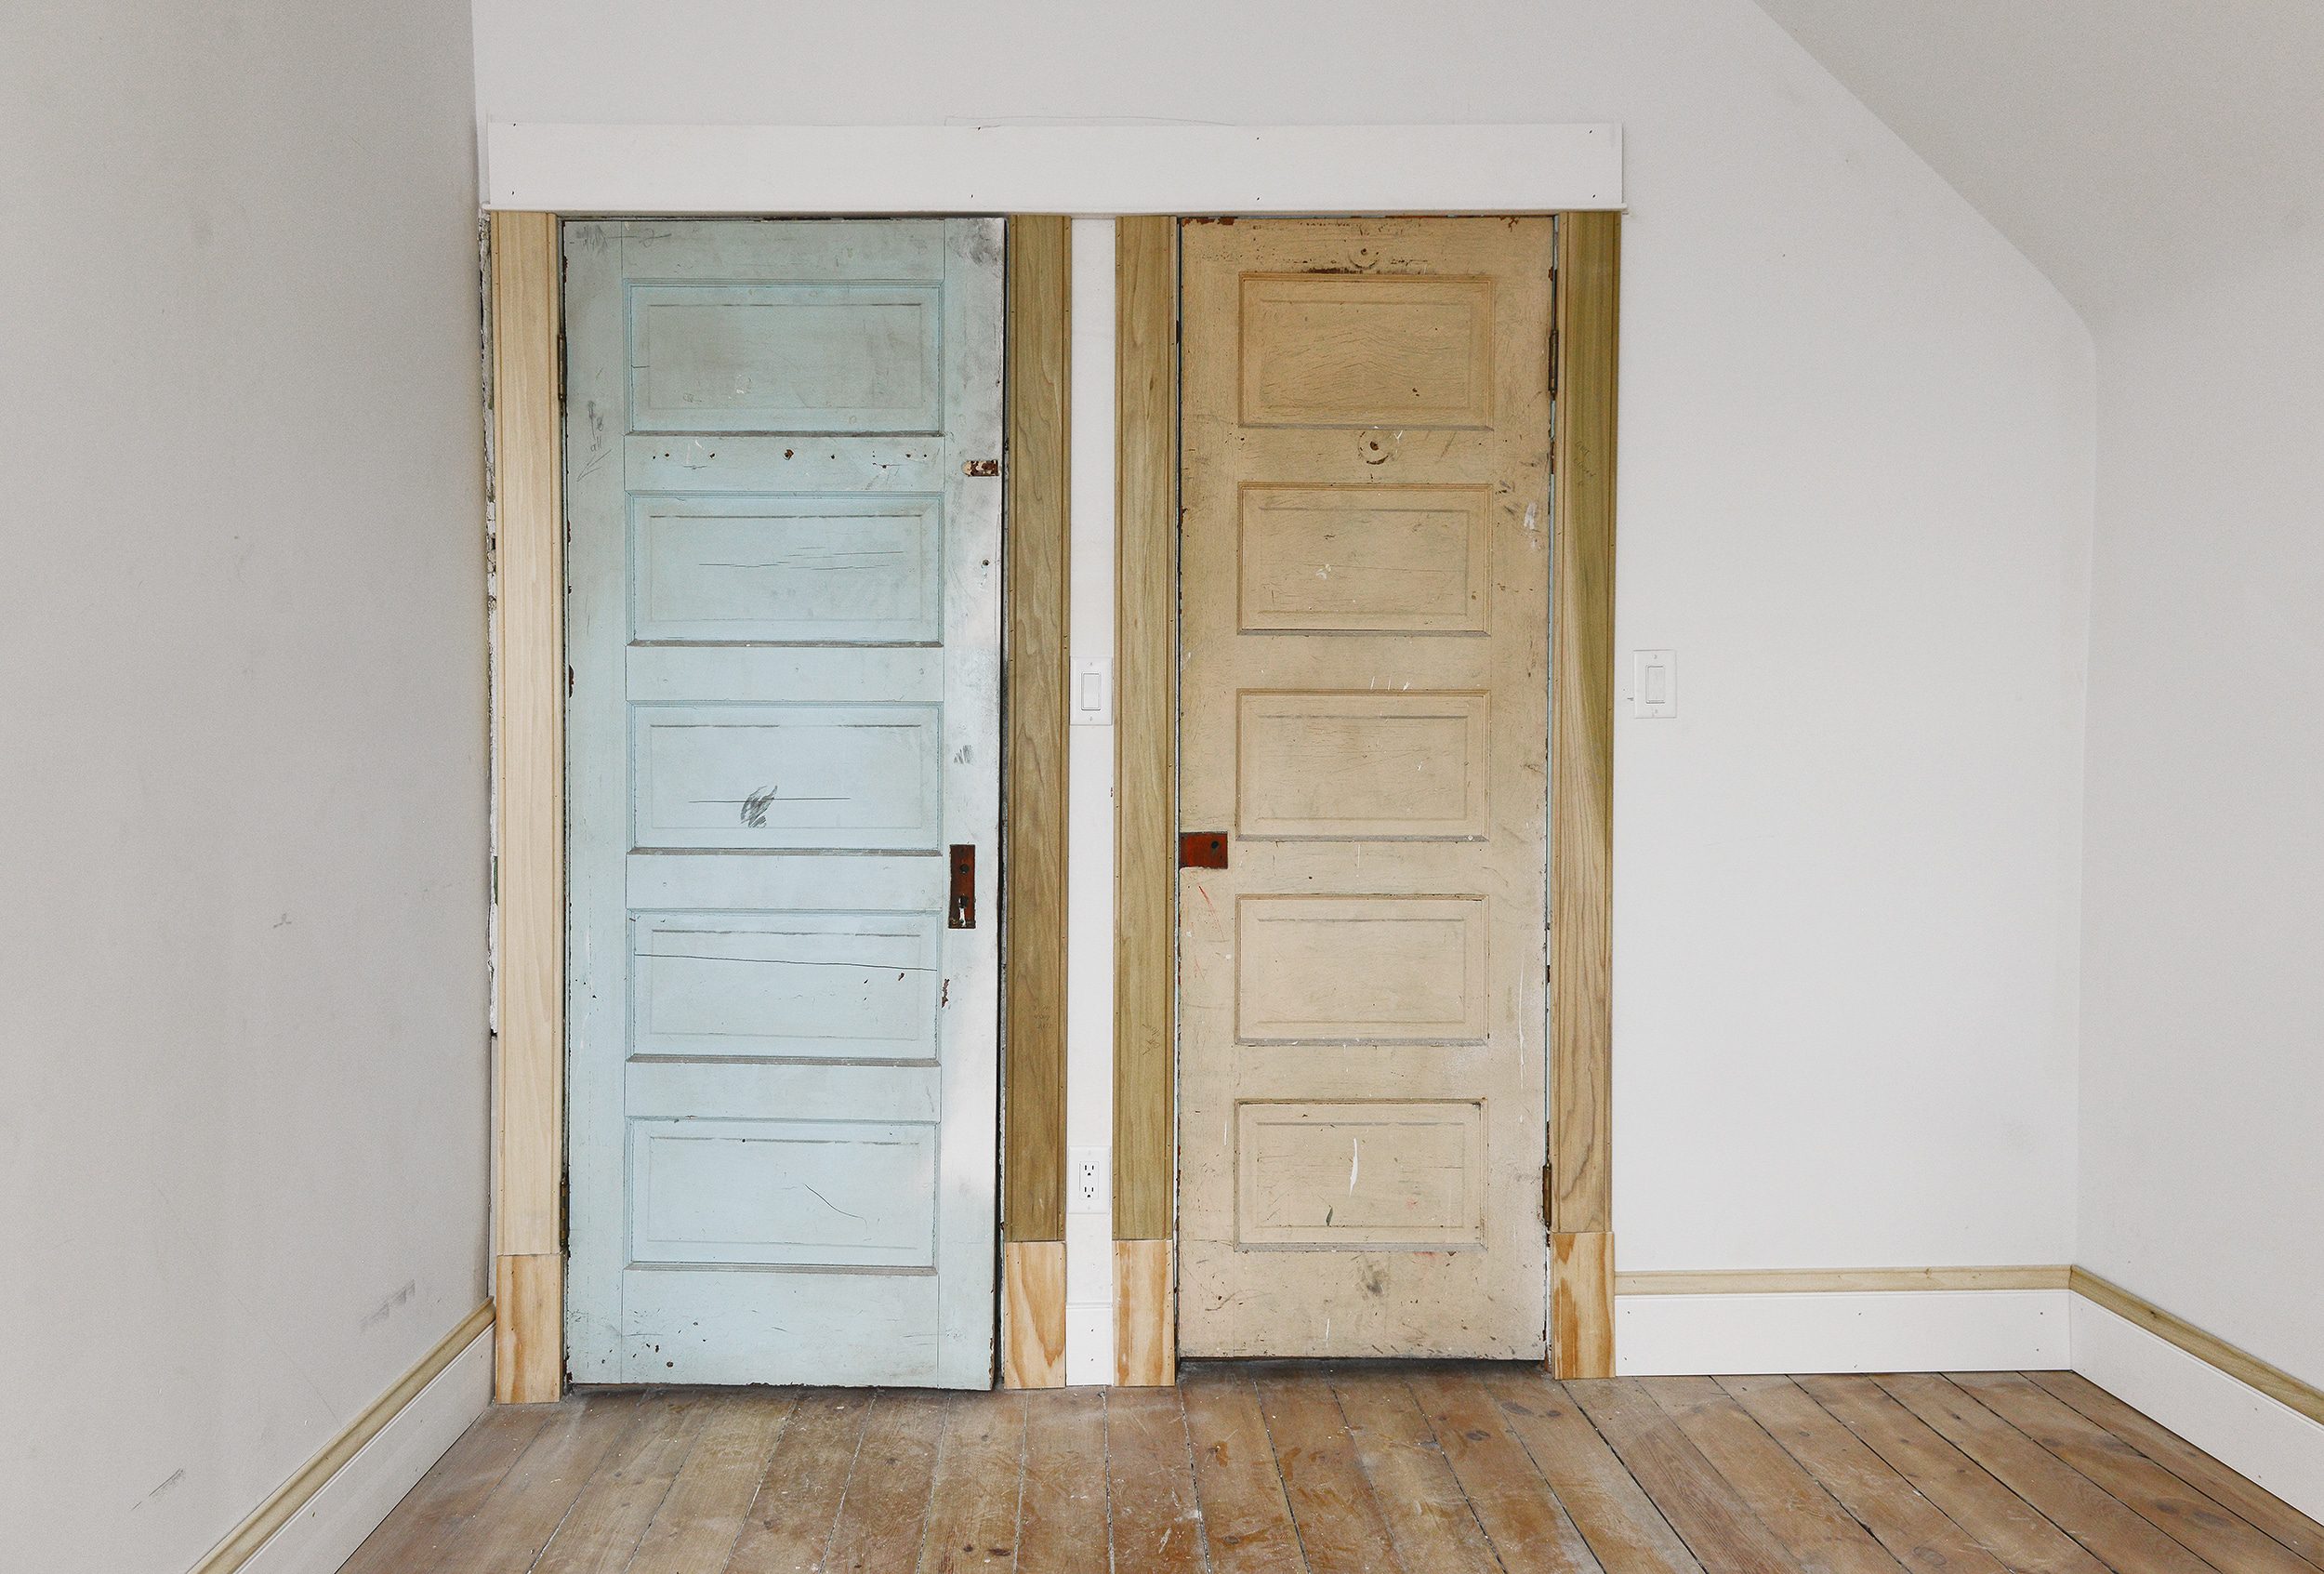 A vintage bedroom with 5 panel doors and new door casings // via Yellow Brick Home